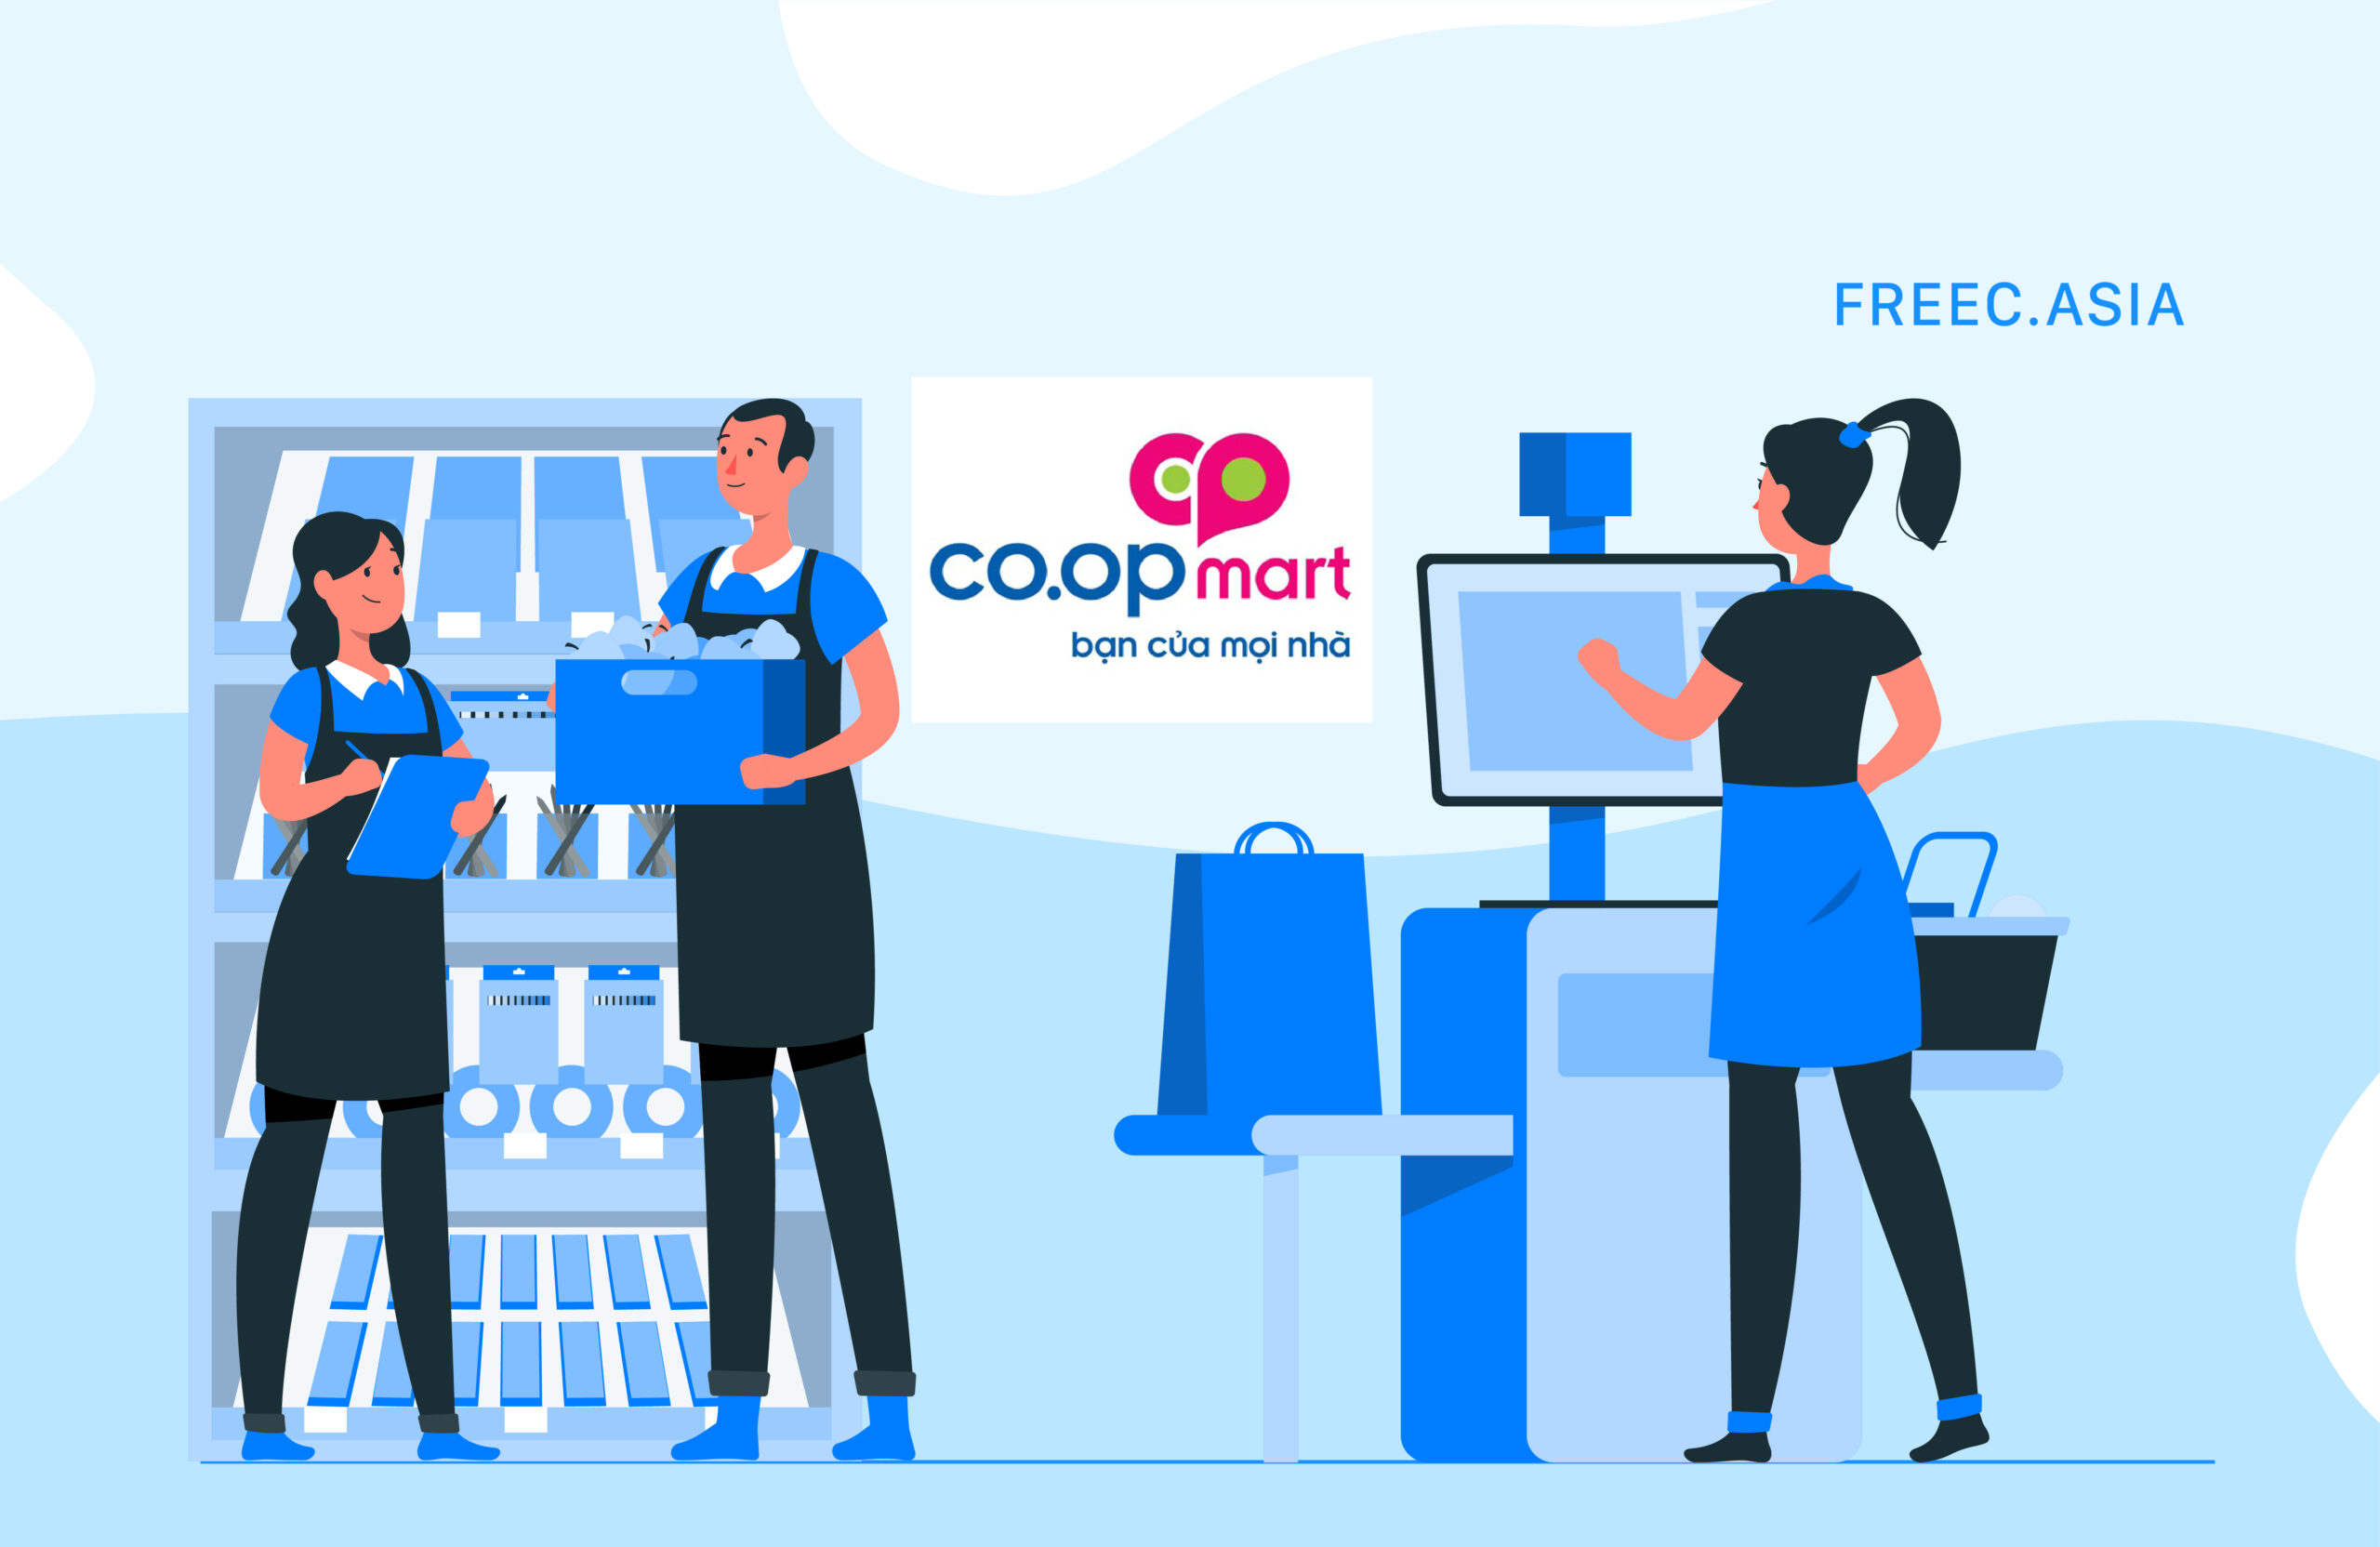 Coopmart tuyển dụng - Kinh nghiệm ứng tuyển thành công